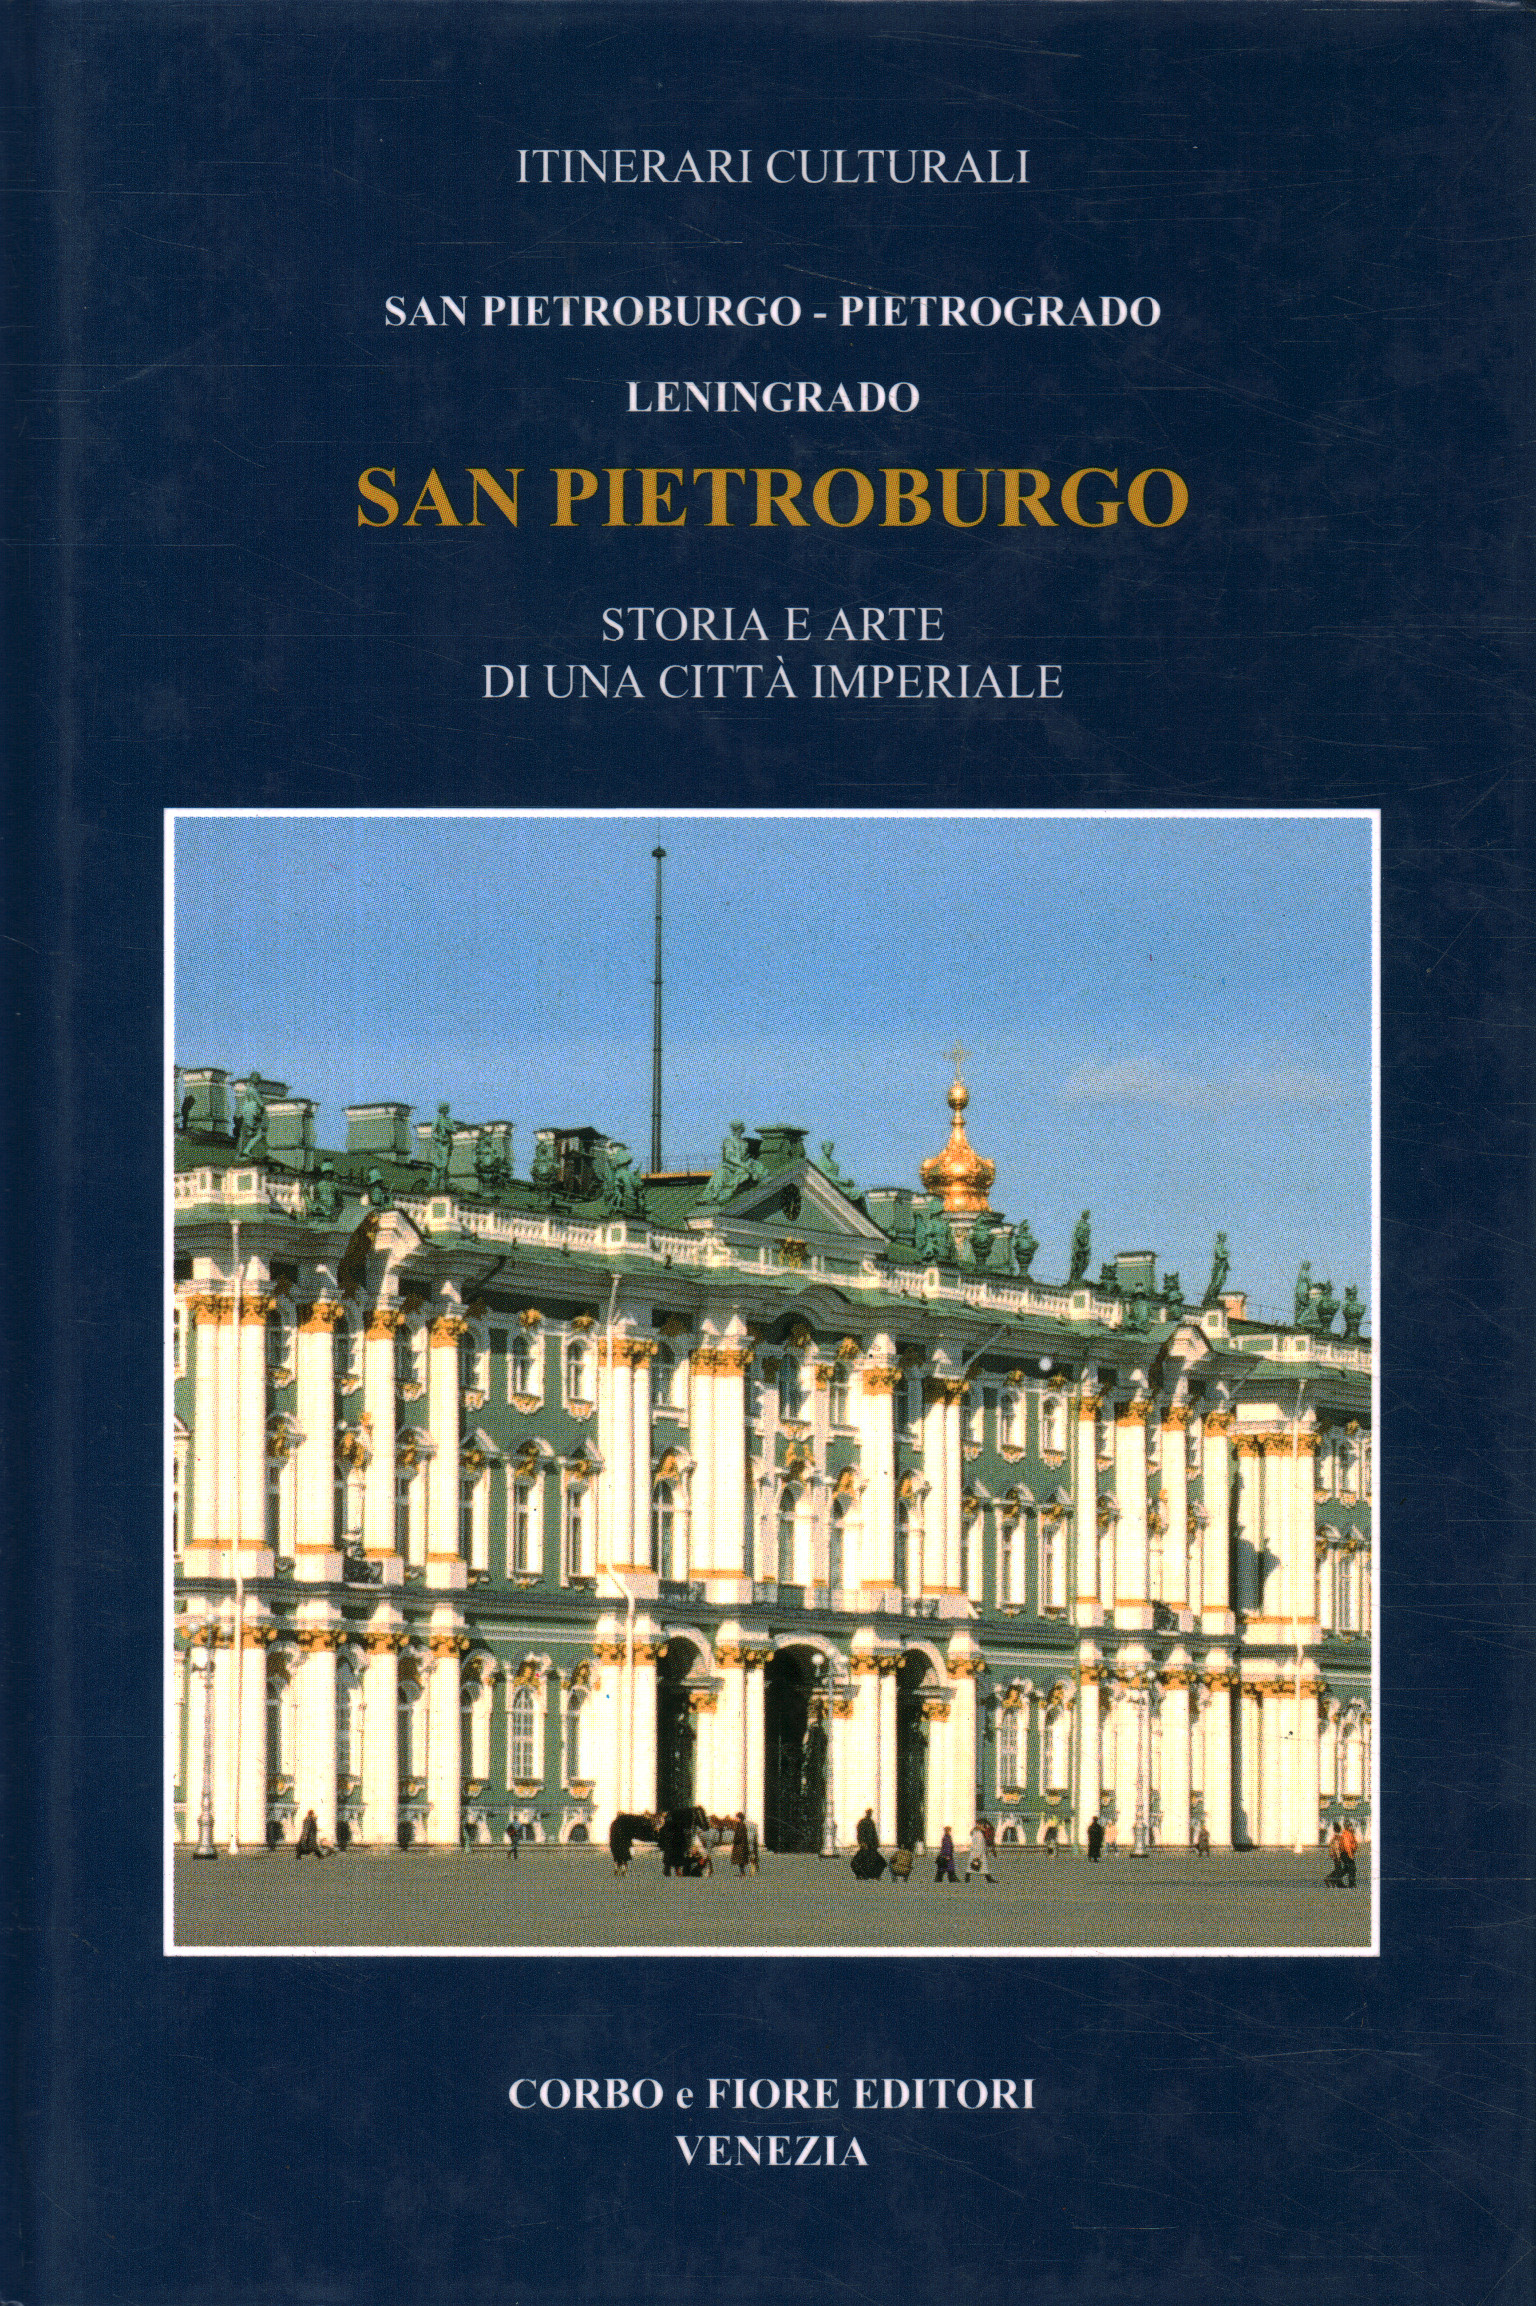 San Petersburgo Petrogrado, Leningrado, San Petersburgo Petrogrado, Leningrado